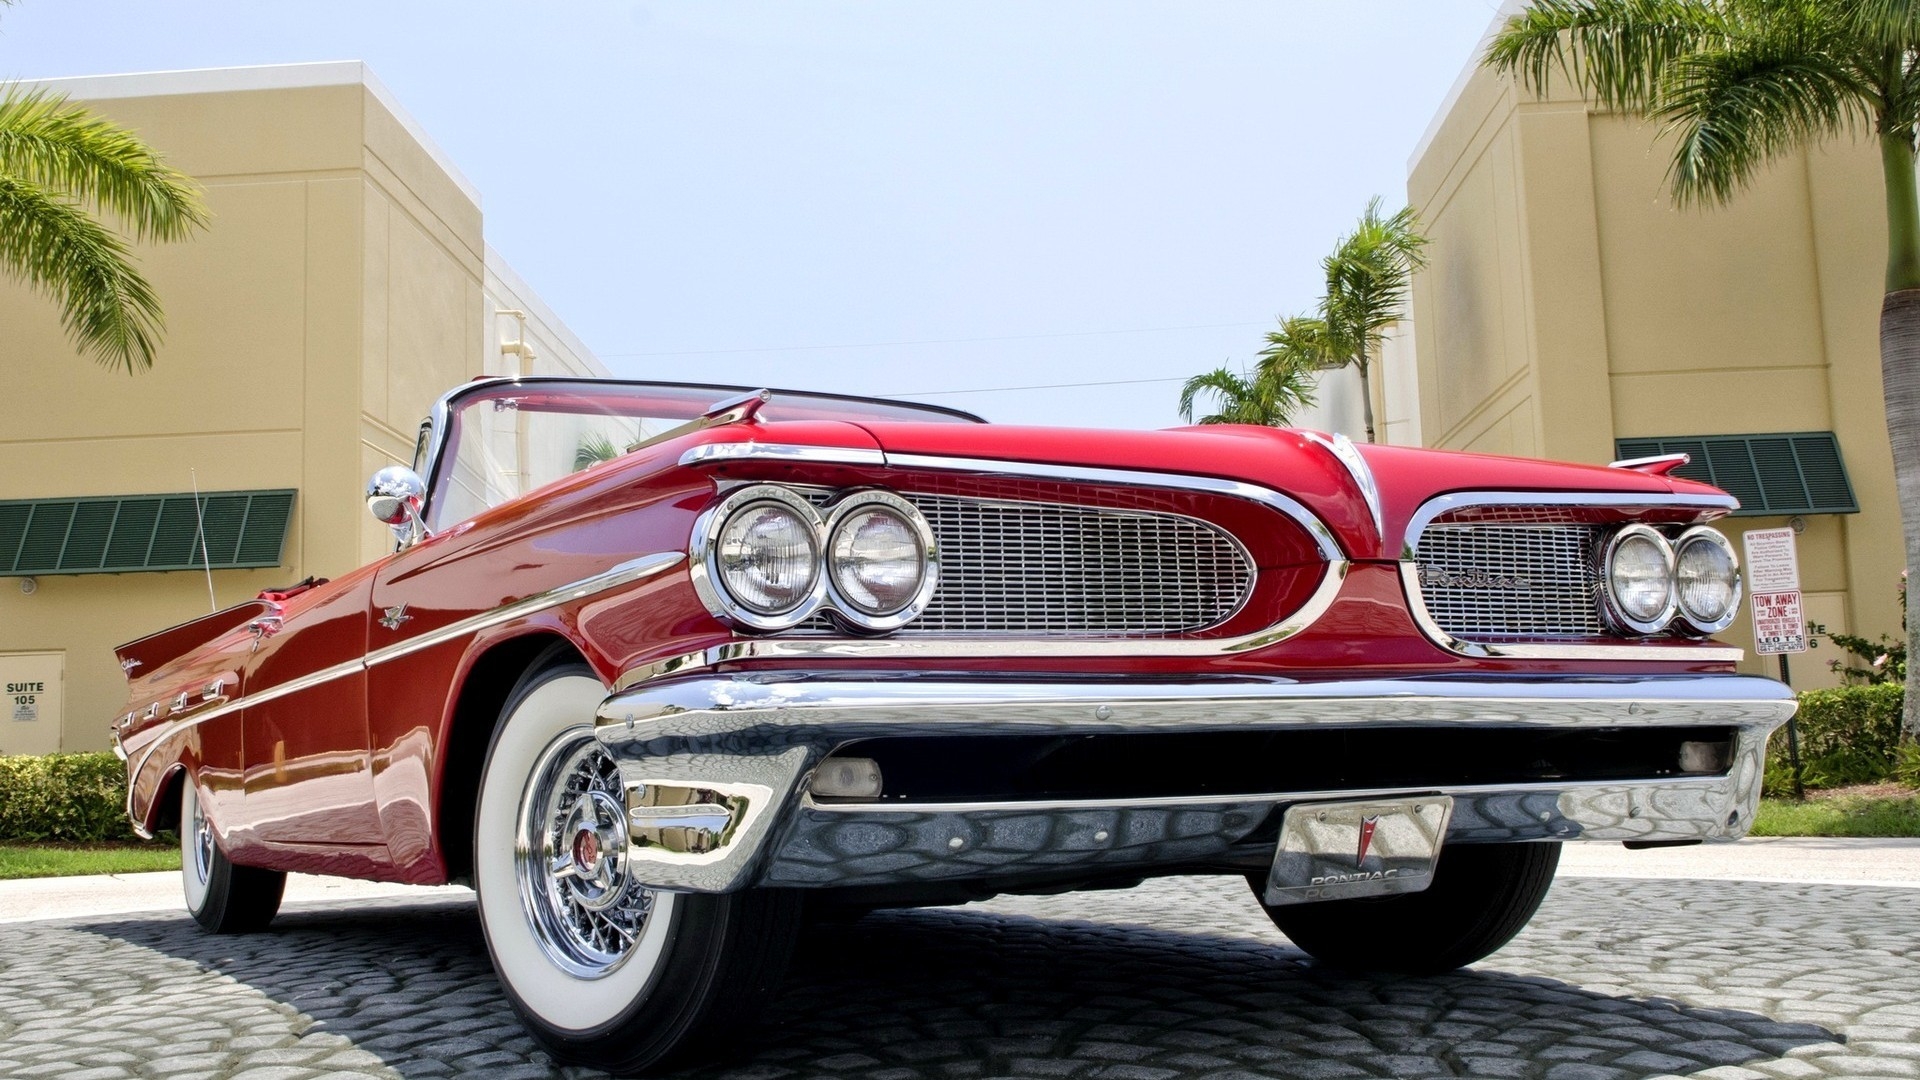 1959 Red Pontiac Cabrio for 1920 x 1080 HDTV 1080p resolution